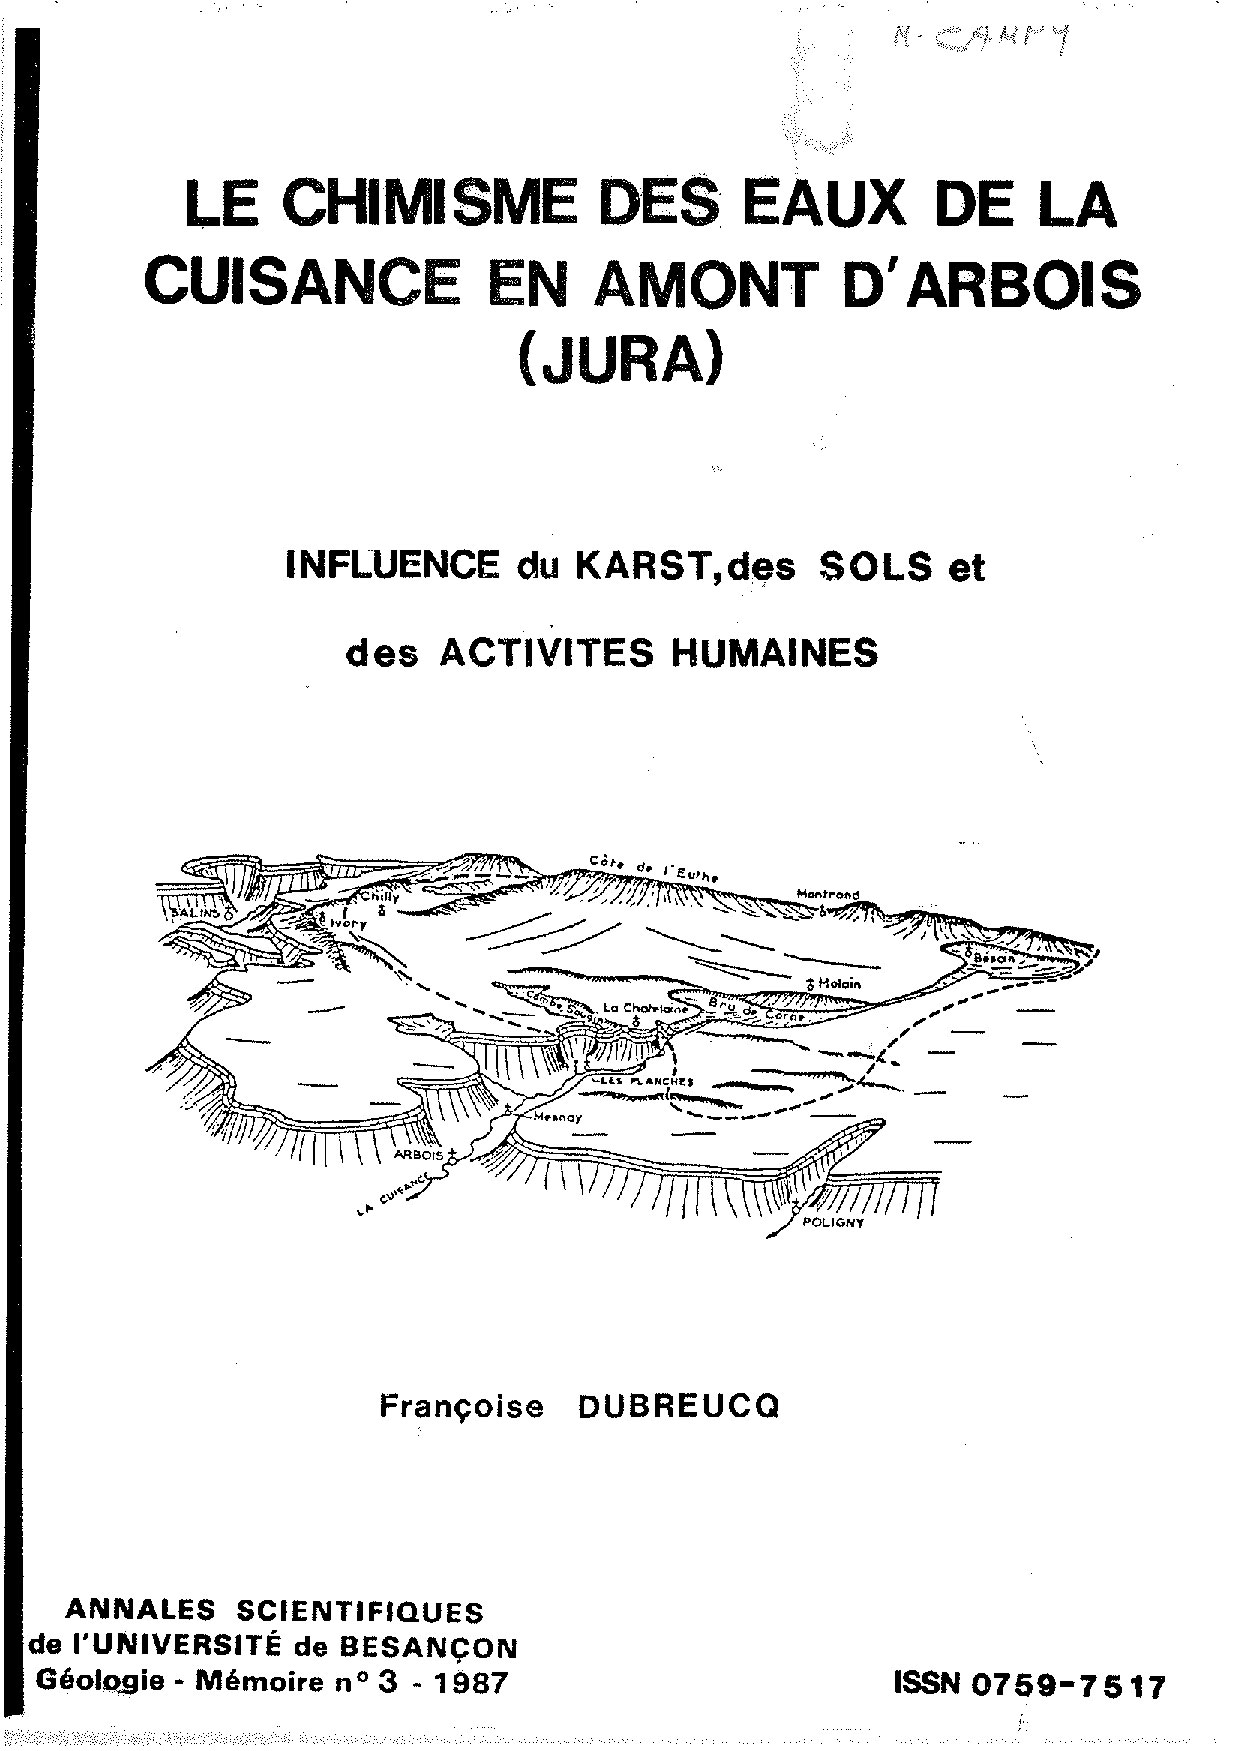 Annales scientifiques de l'Université de Besançon. Géologie. Mémoire n°3 - 1987.